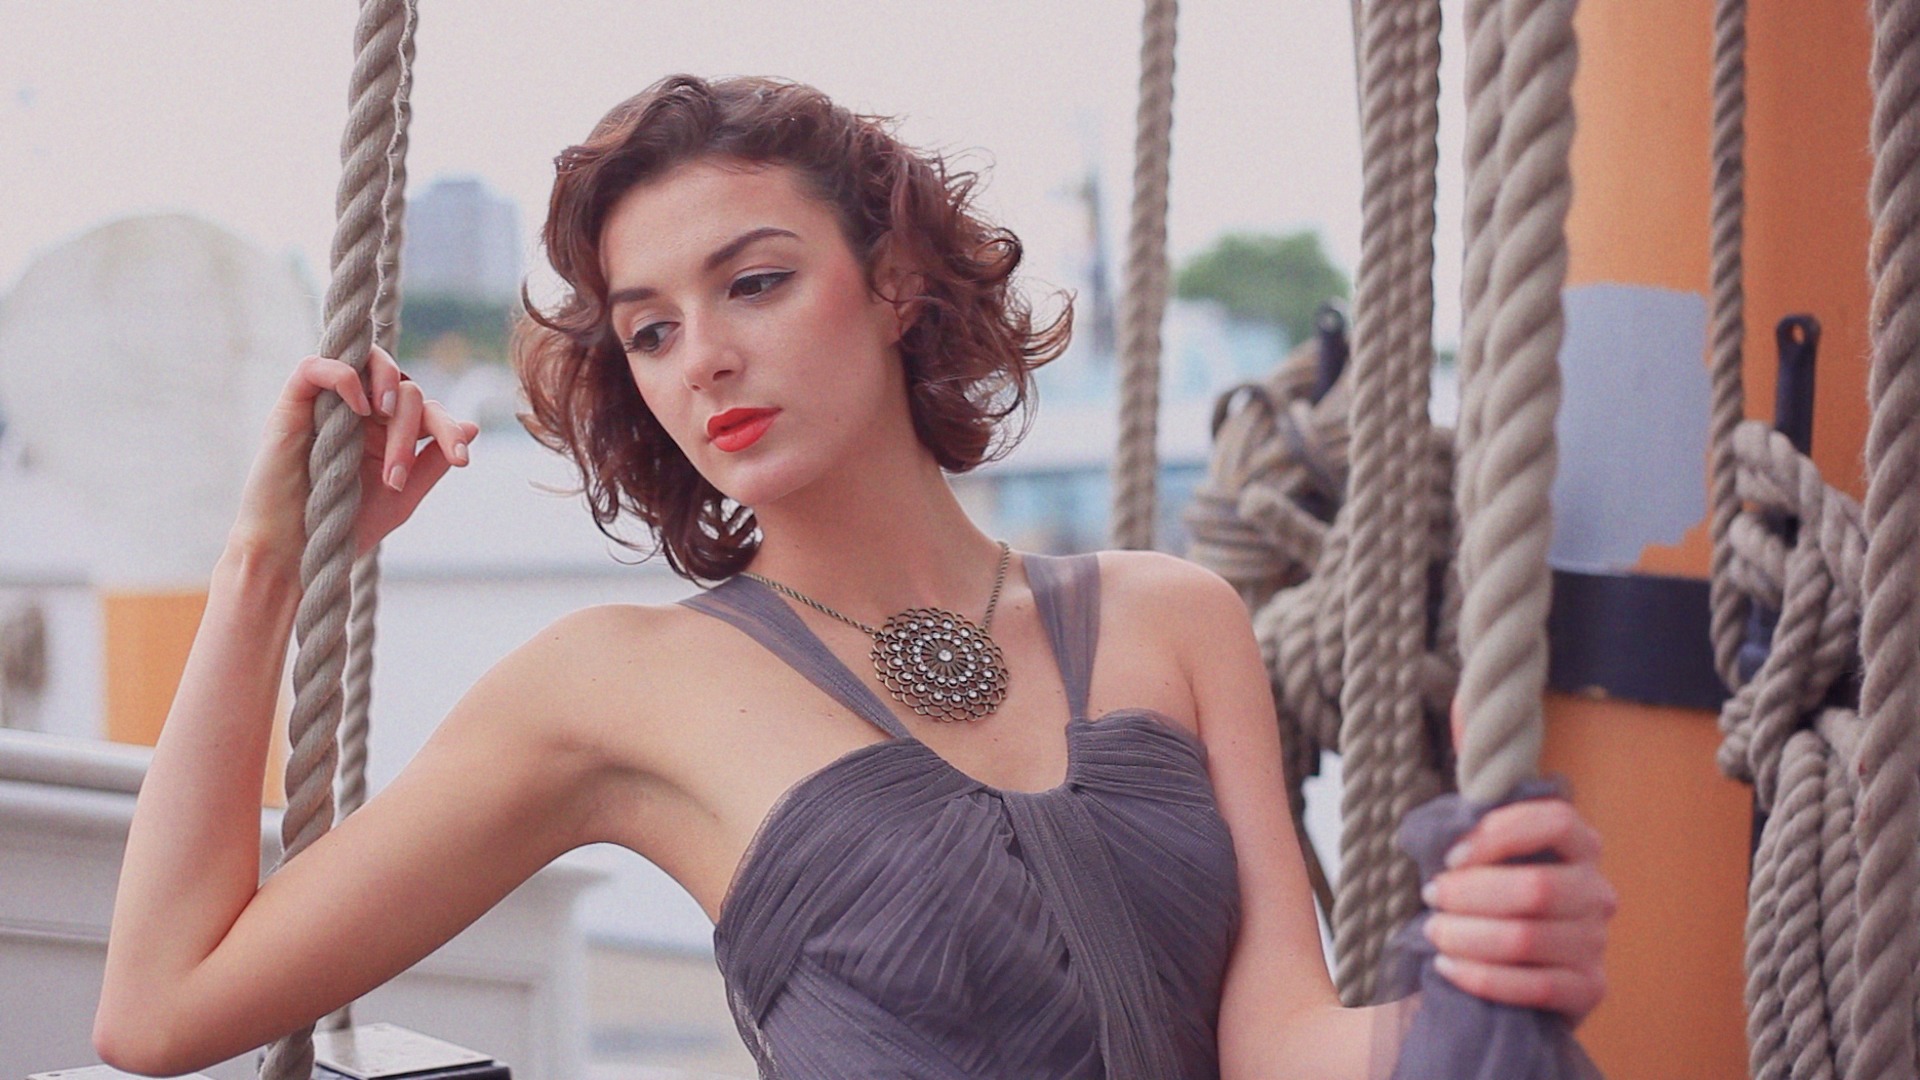 L’Oréal Paris LUMIERE Cannes ’14 inspired fashion film